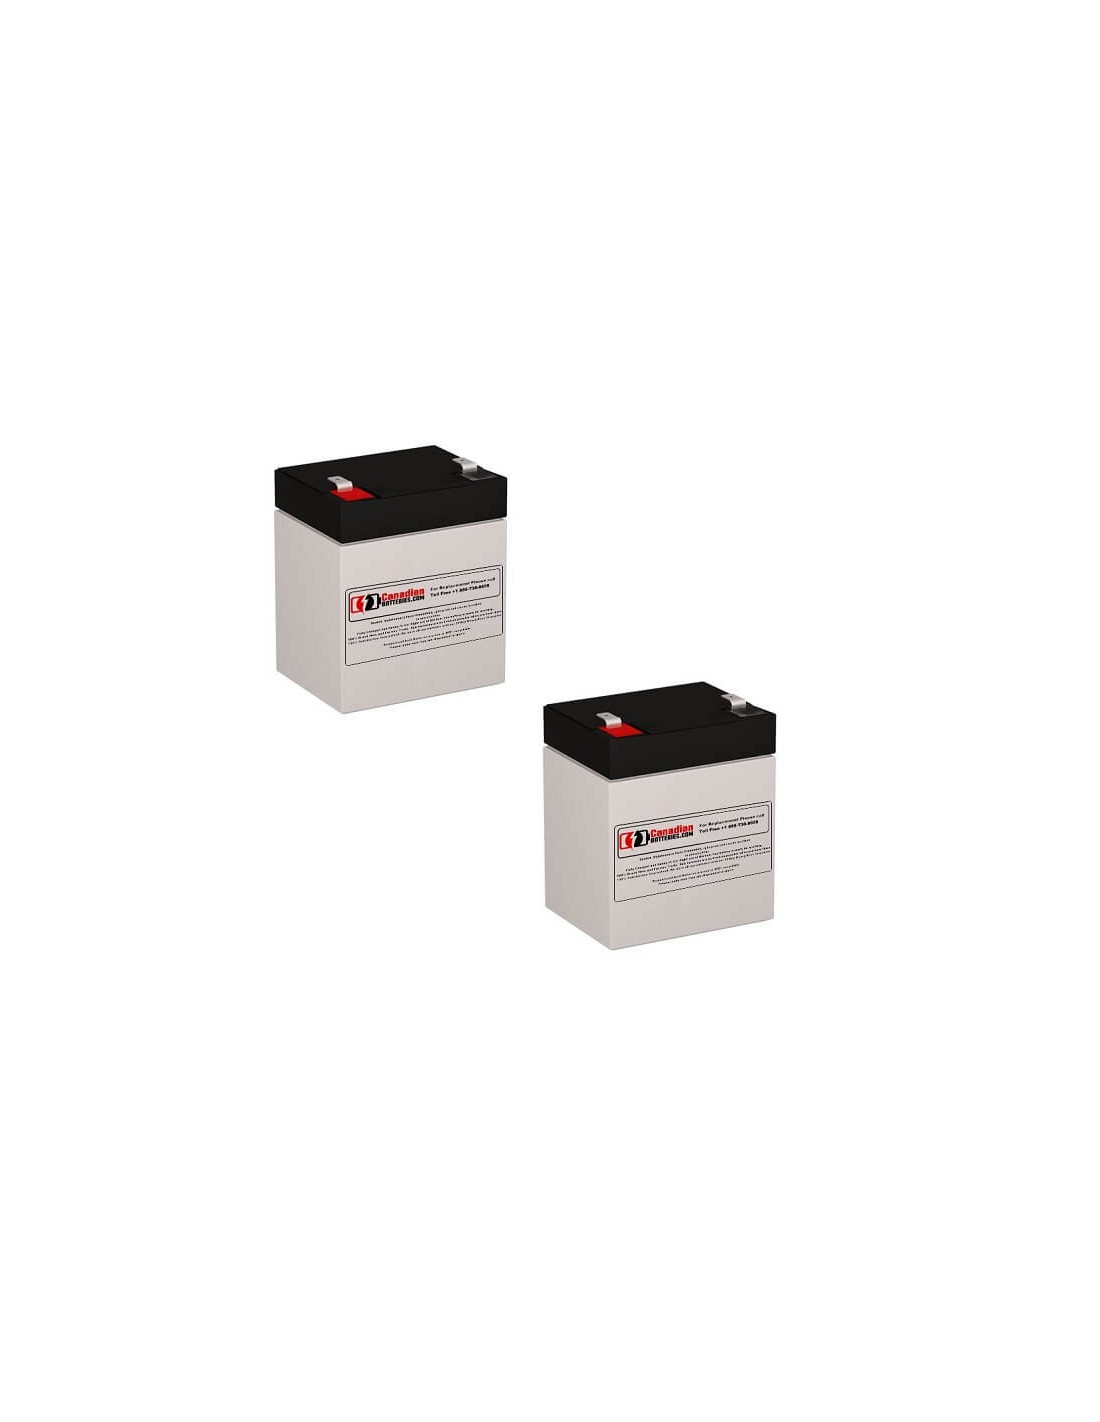 Batteries for Belkin F6c1000-tw-rk UPS, 2 x 12V, 5Ah - 60Wh